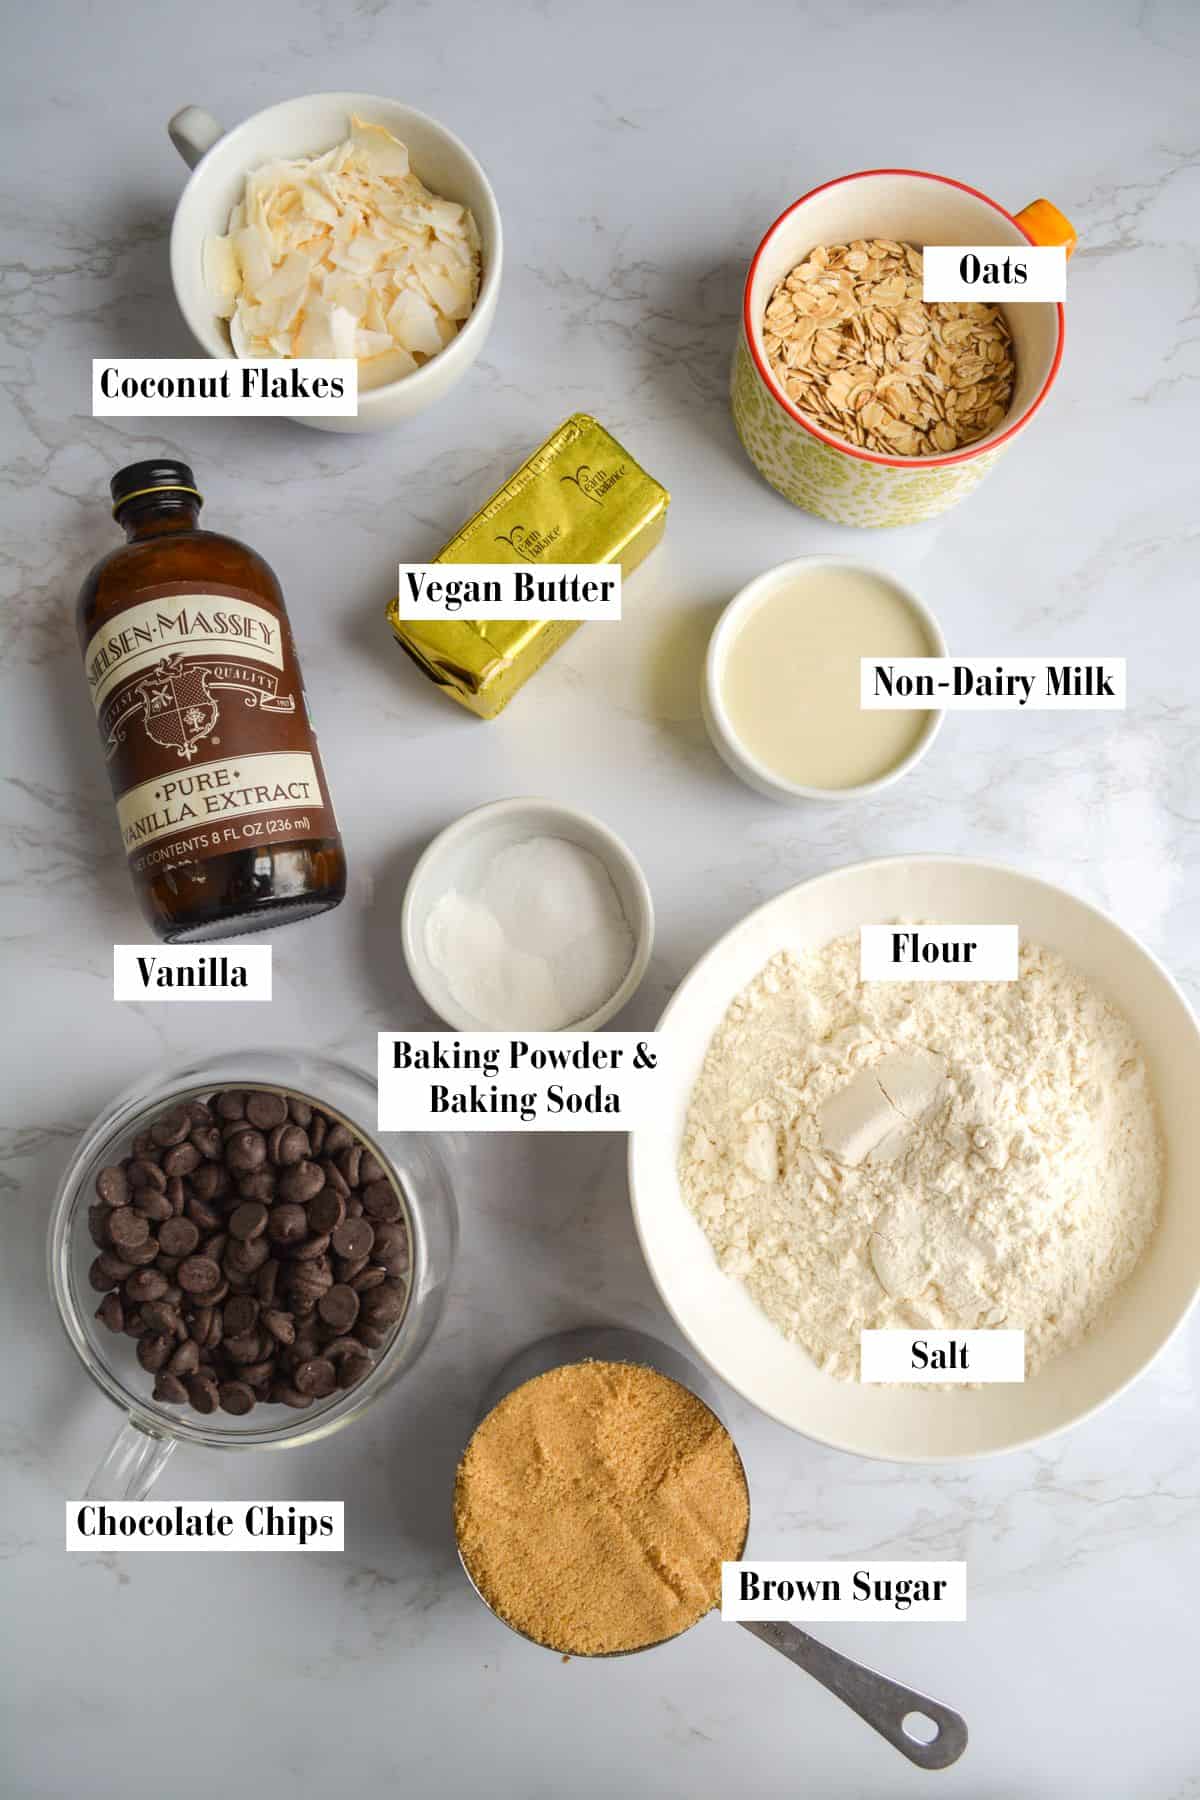 Ingredients for making this vegan cookie recipe.